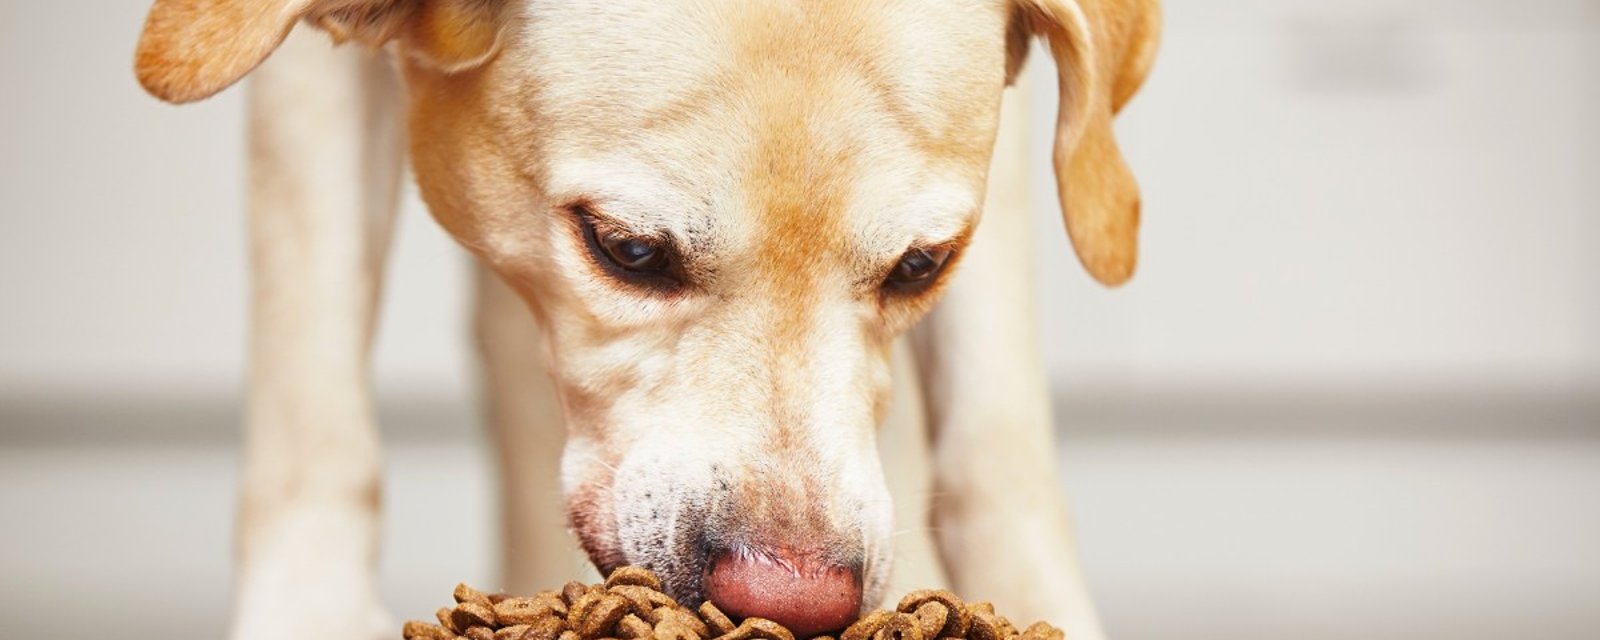 ALERTE 16 marques de nourriture pour chien pourraient causer des problèmes cardiaques